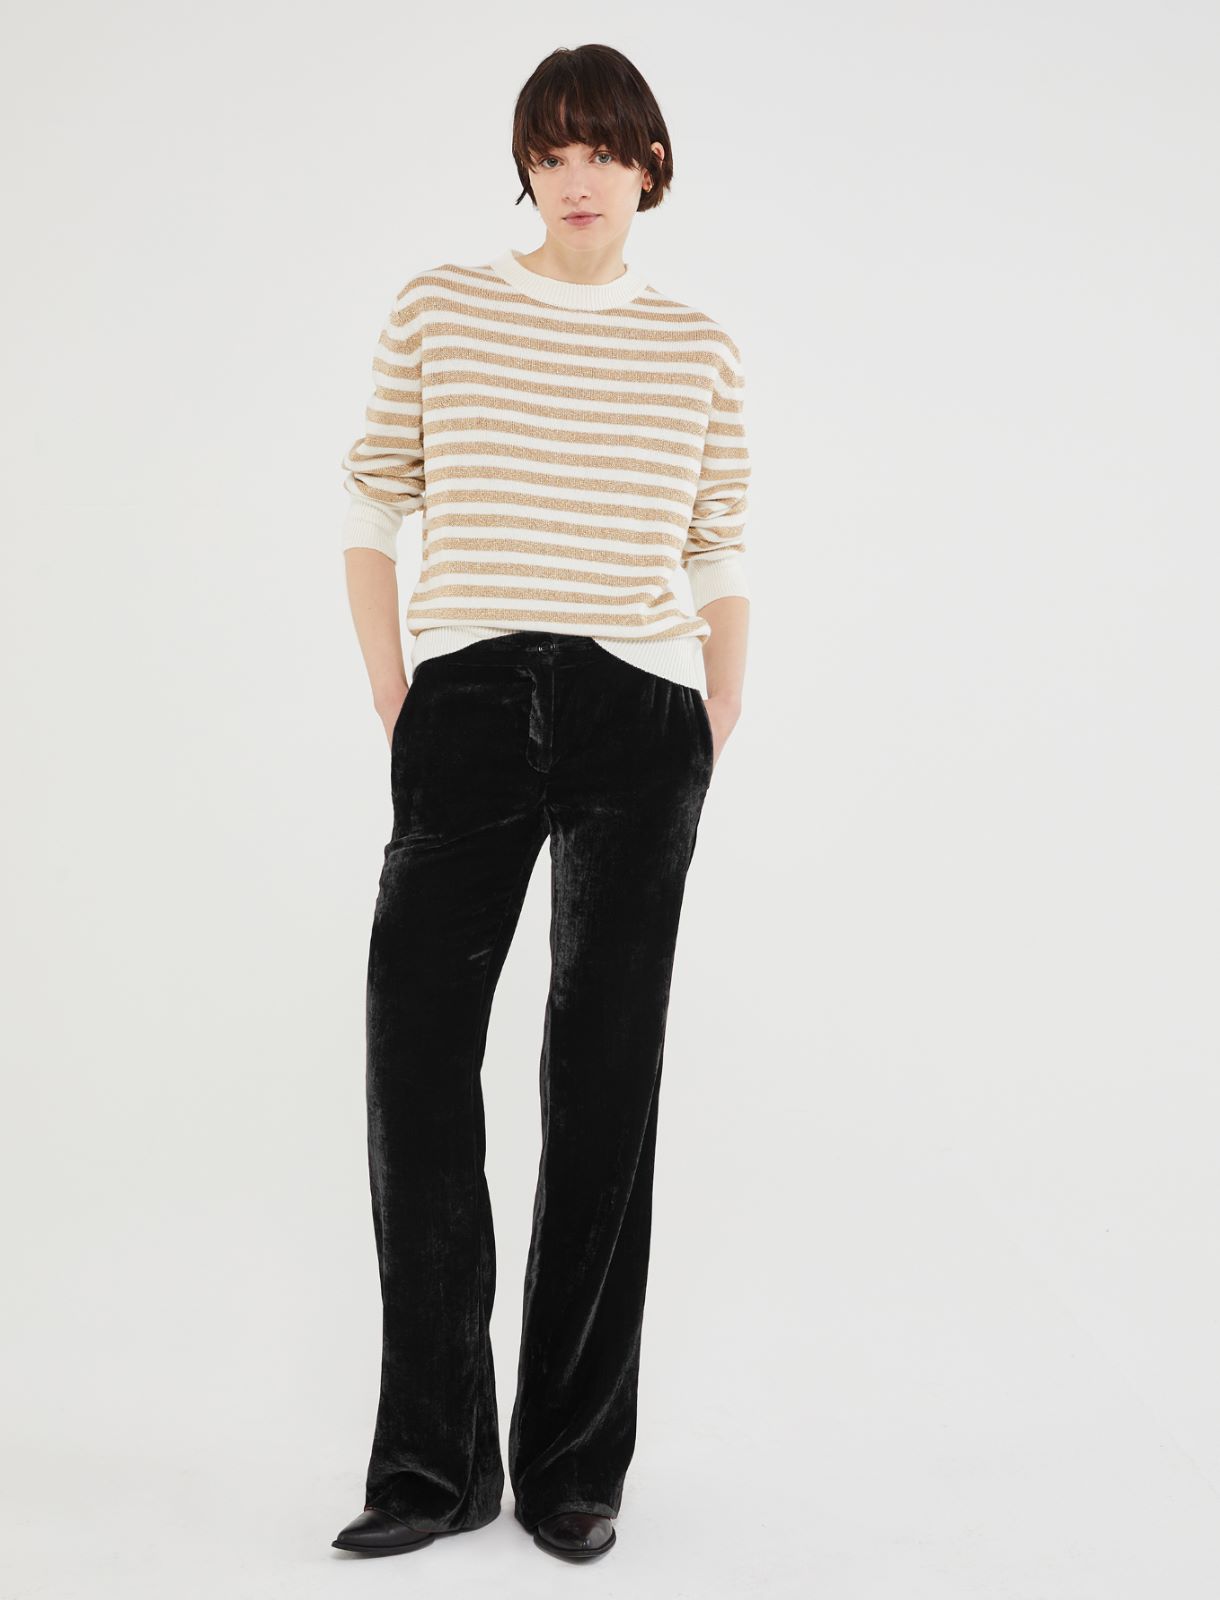 Striped sweater - Cream - Marella - 2